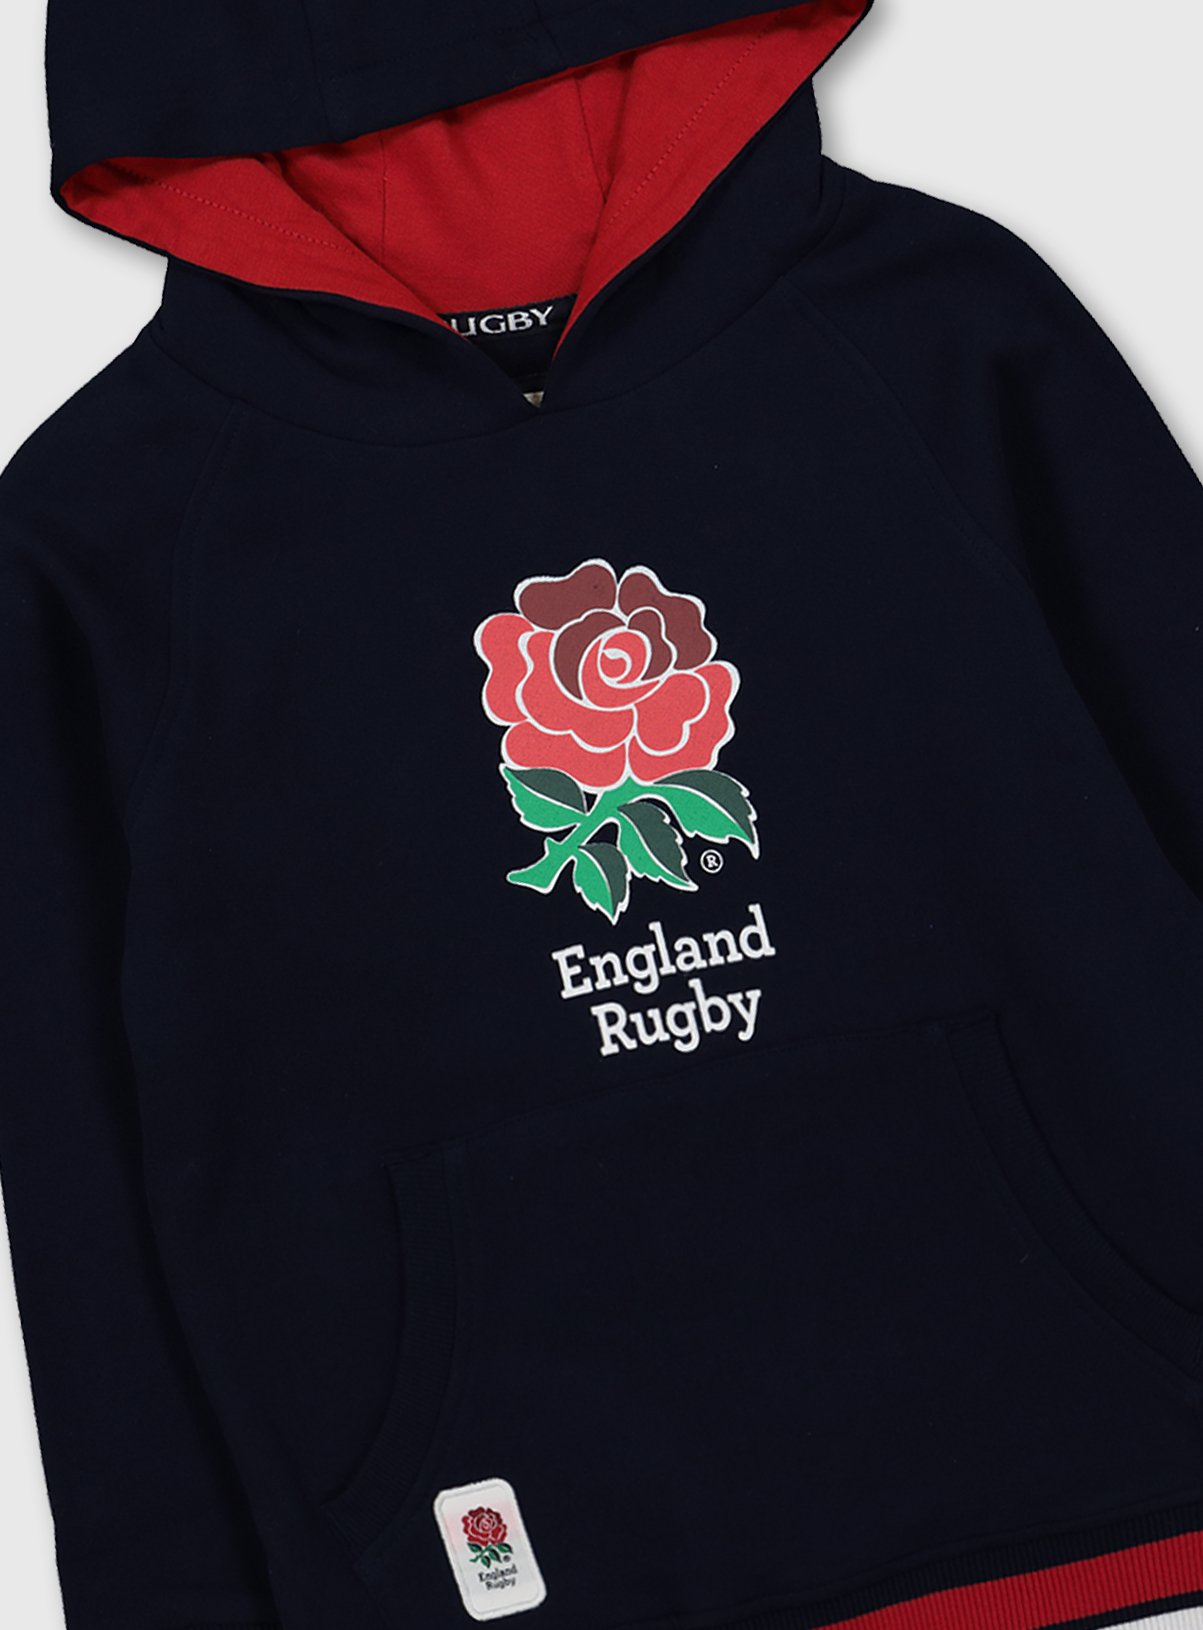 england rugby hoodie